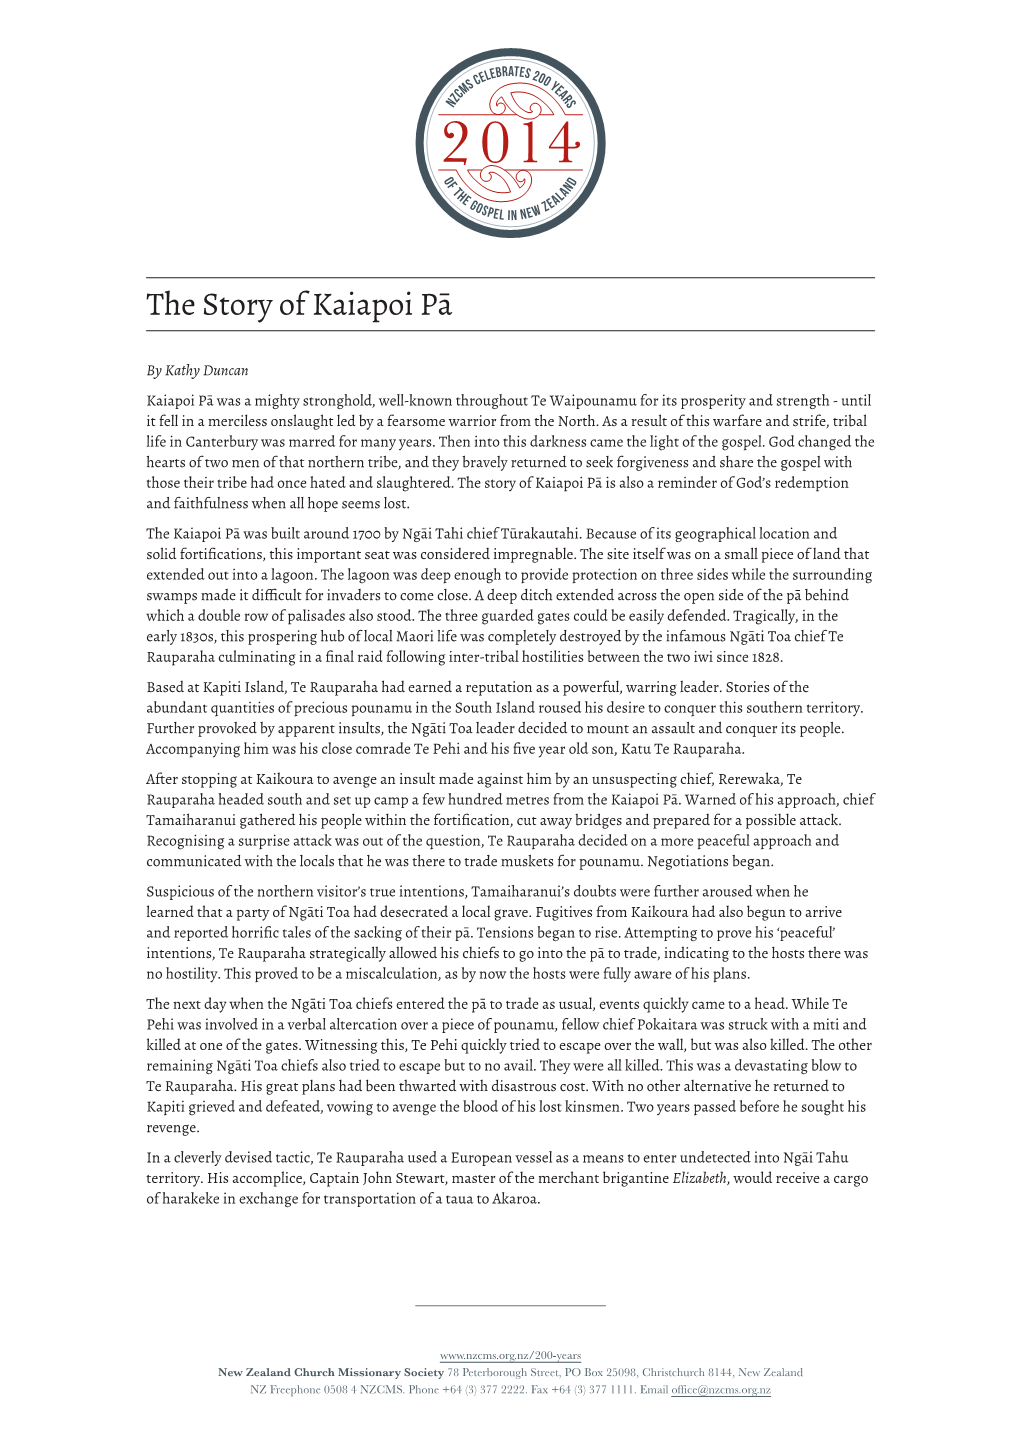 The Story of Kaiapoi Pā